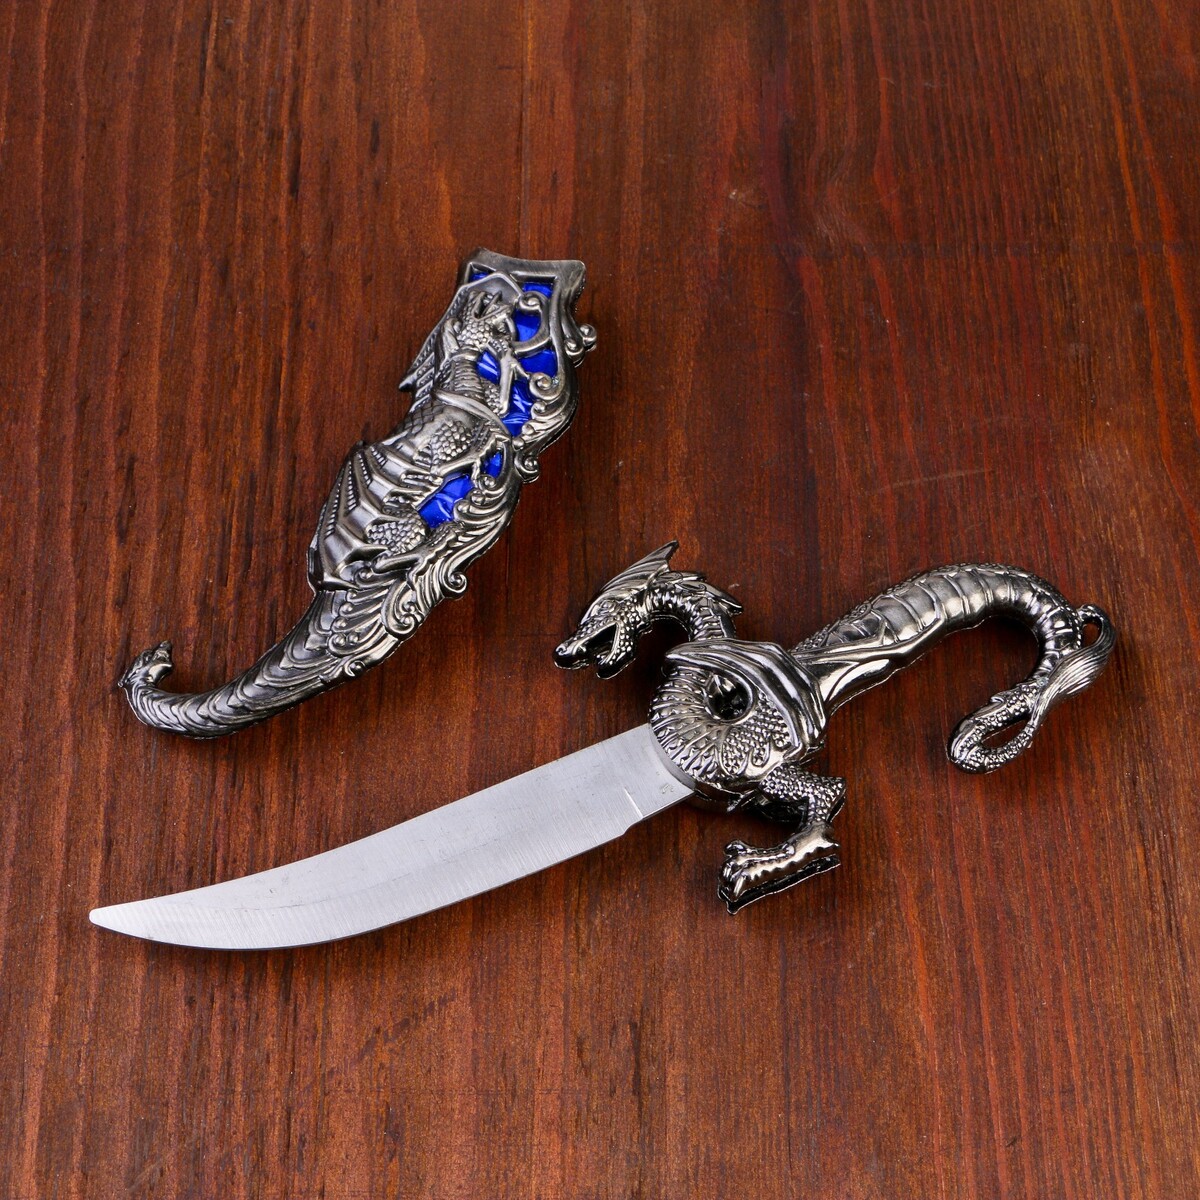 Сувенирный нож, 24,5 см резные ножны, дракон на рукояти дракон из сумрака